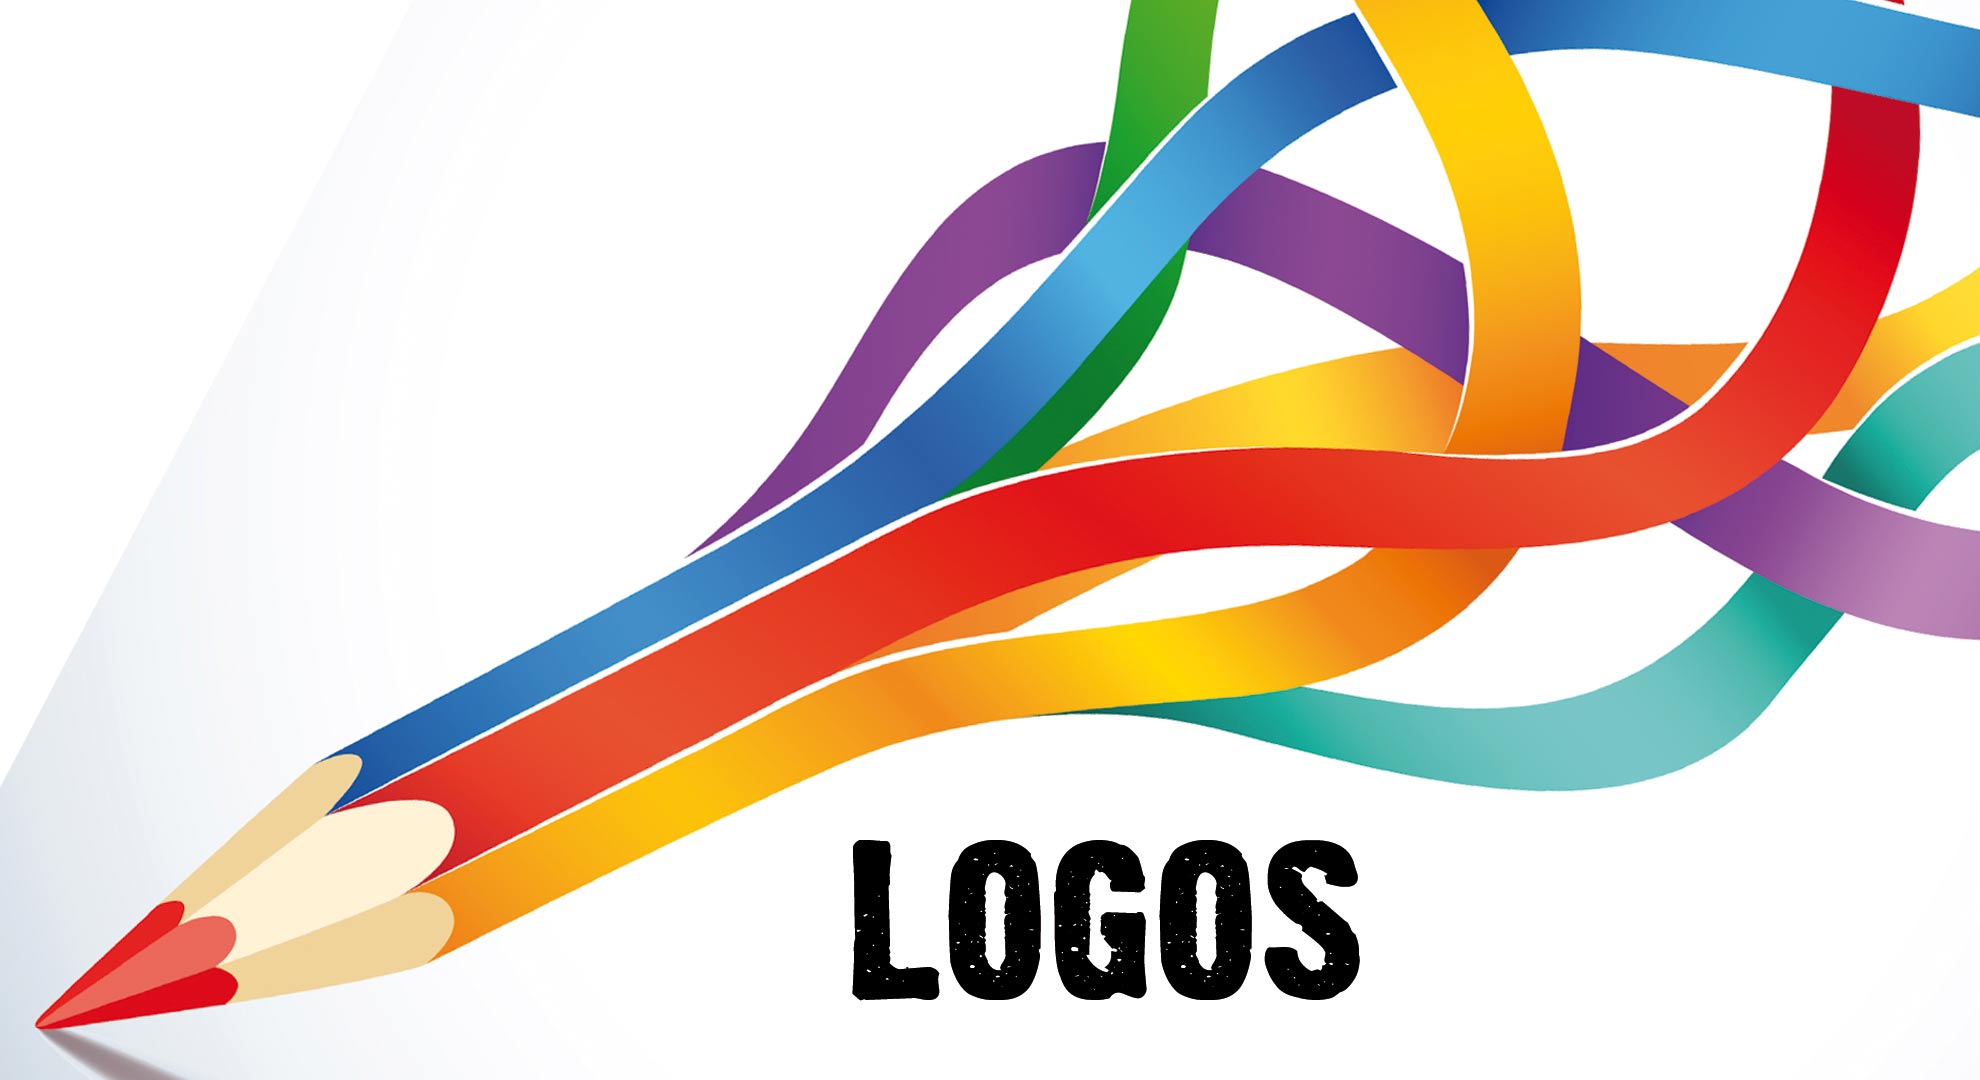 Thủ tục đăng ký logo công ty theo quy định